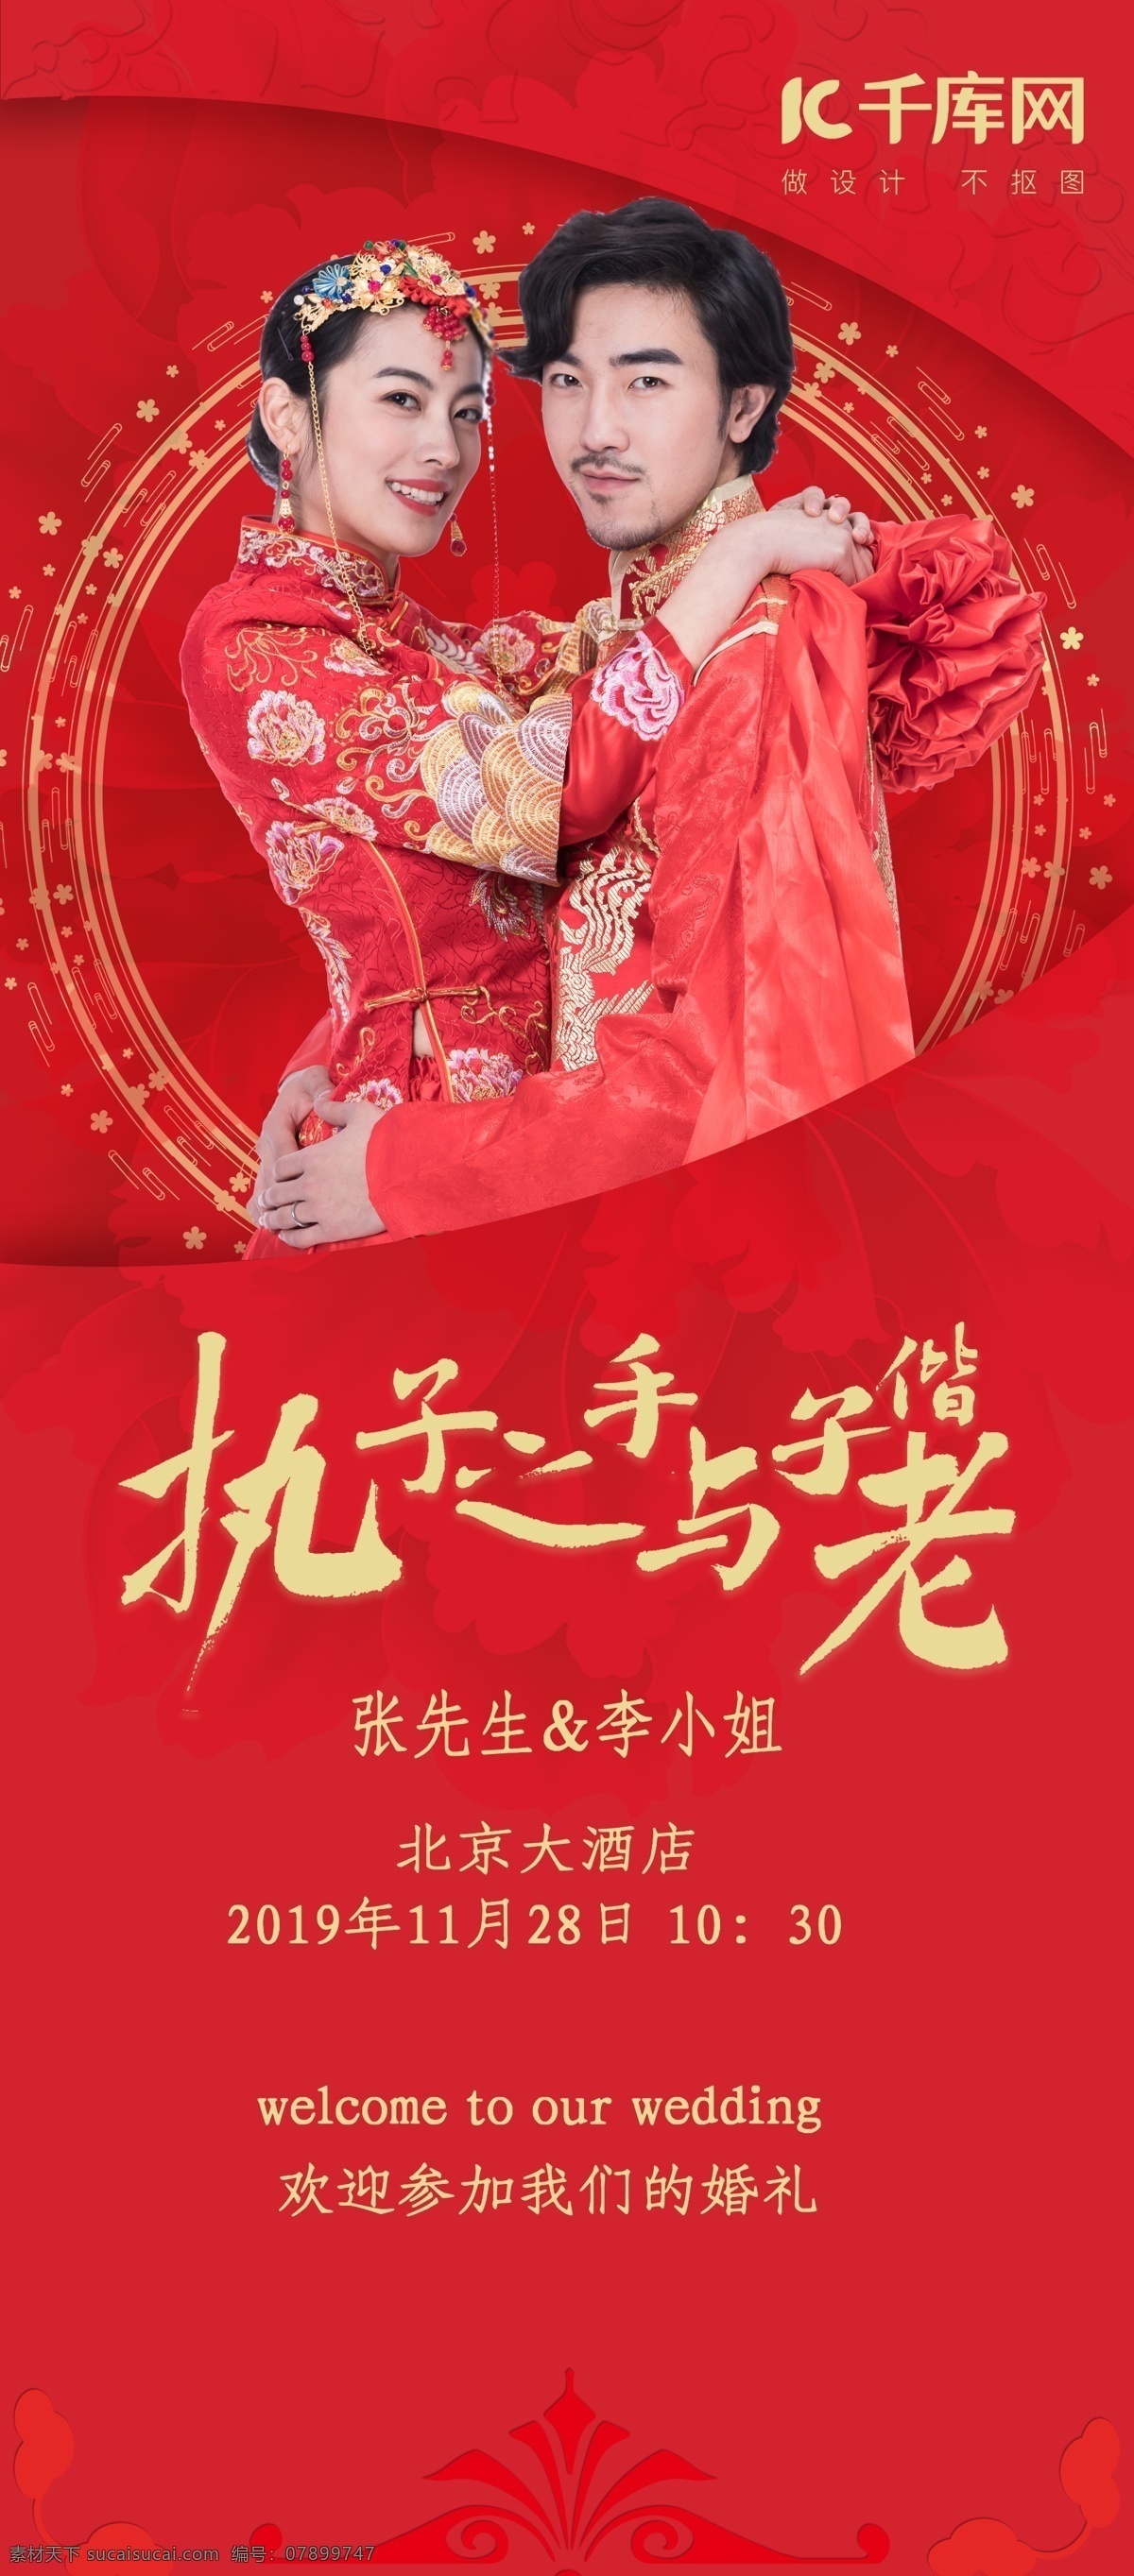 结婚 季 红色 中 国风 婚庆 行业 牡丹 背景 婚礼 展架 结婚季 中国风 婚礼展架